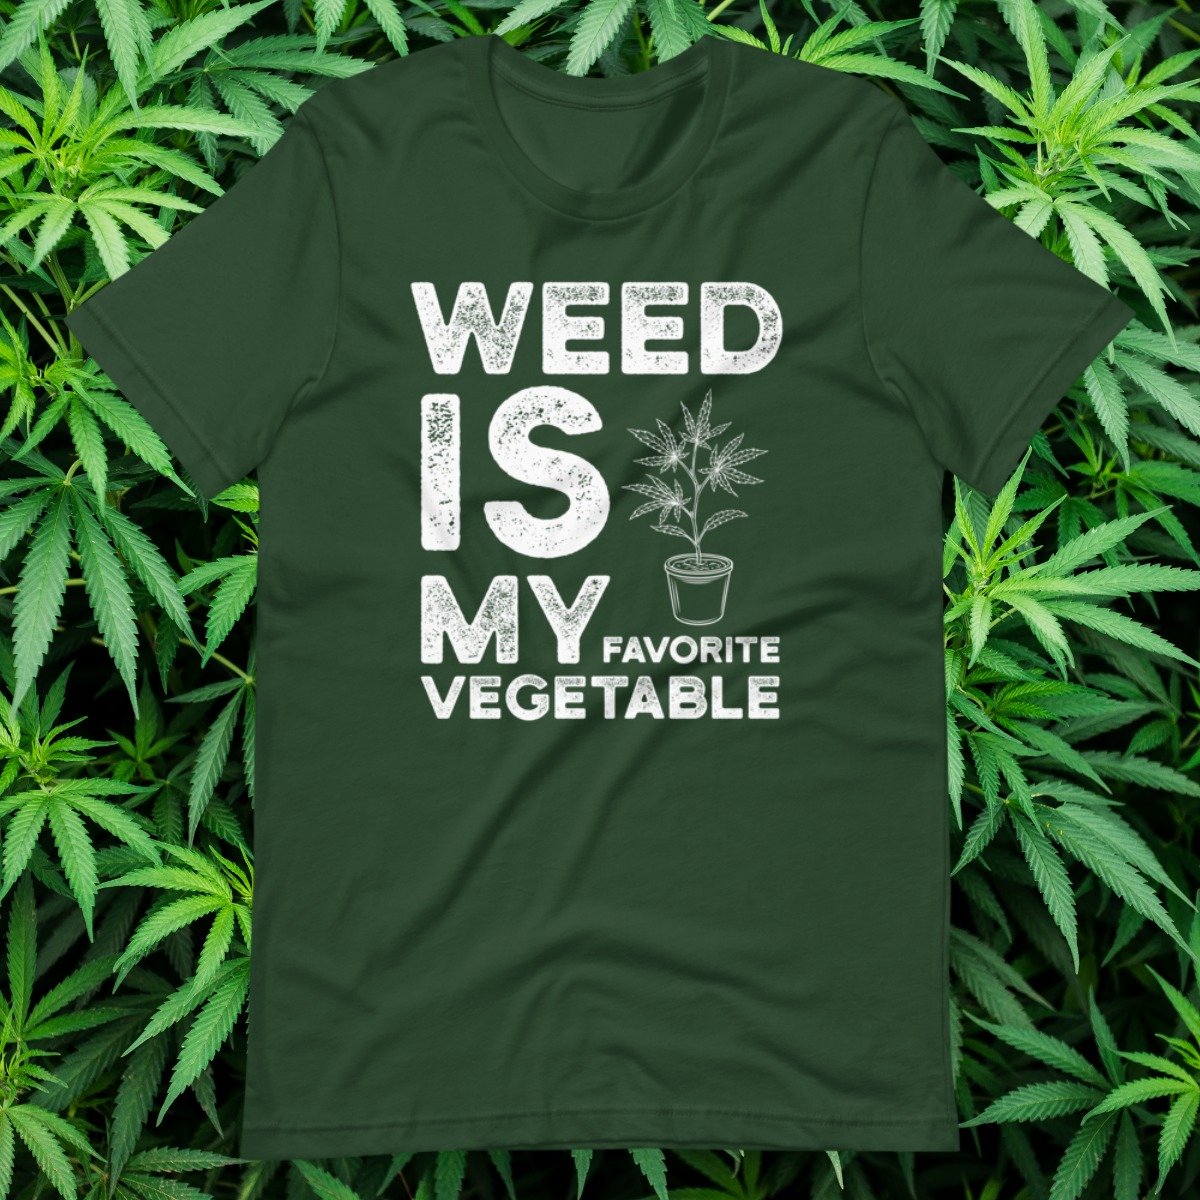 Vegan t-shirt that says weed is my favorite vegetable.jpg